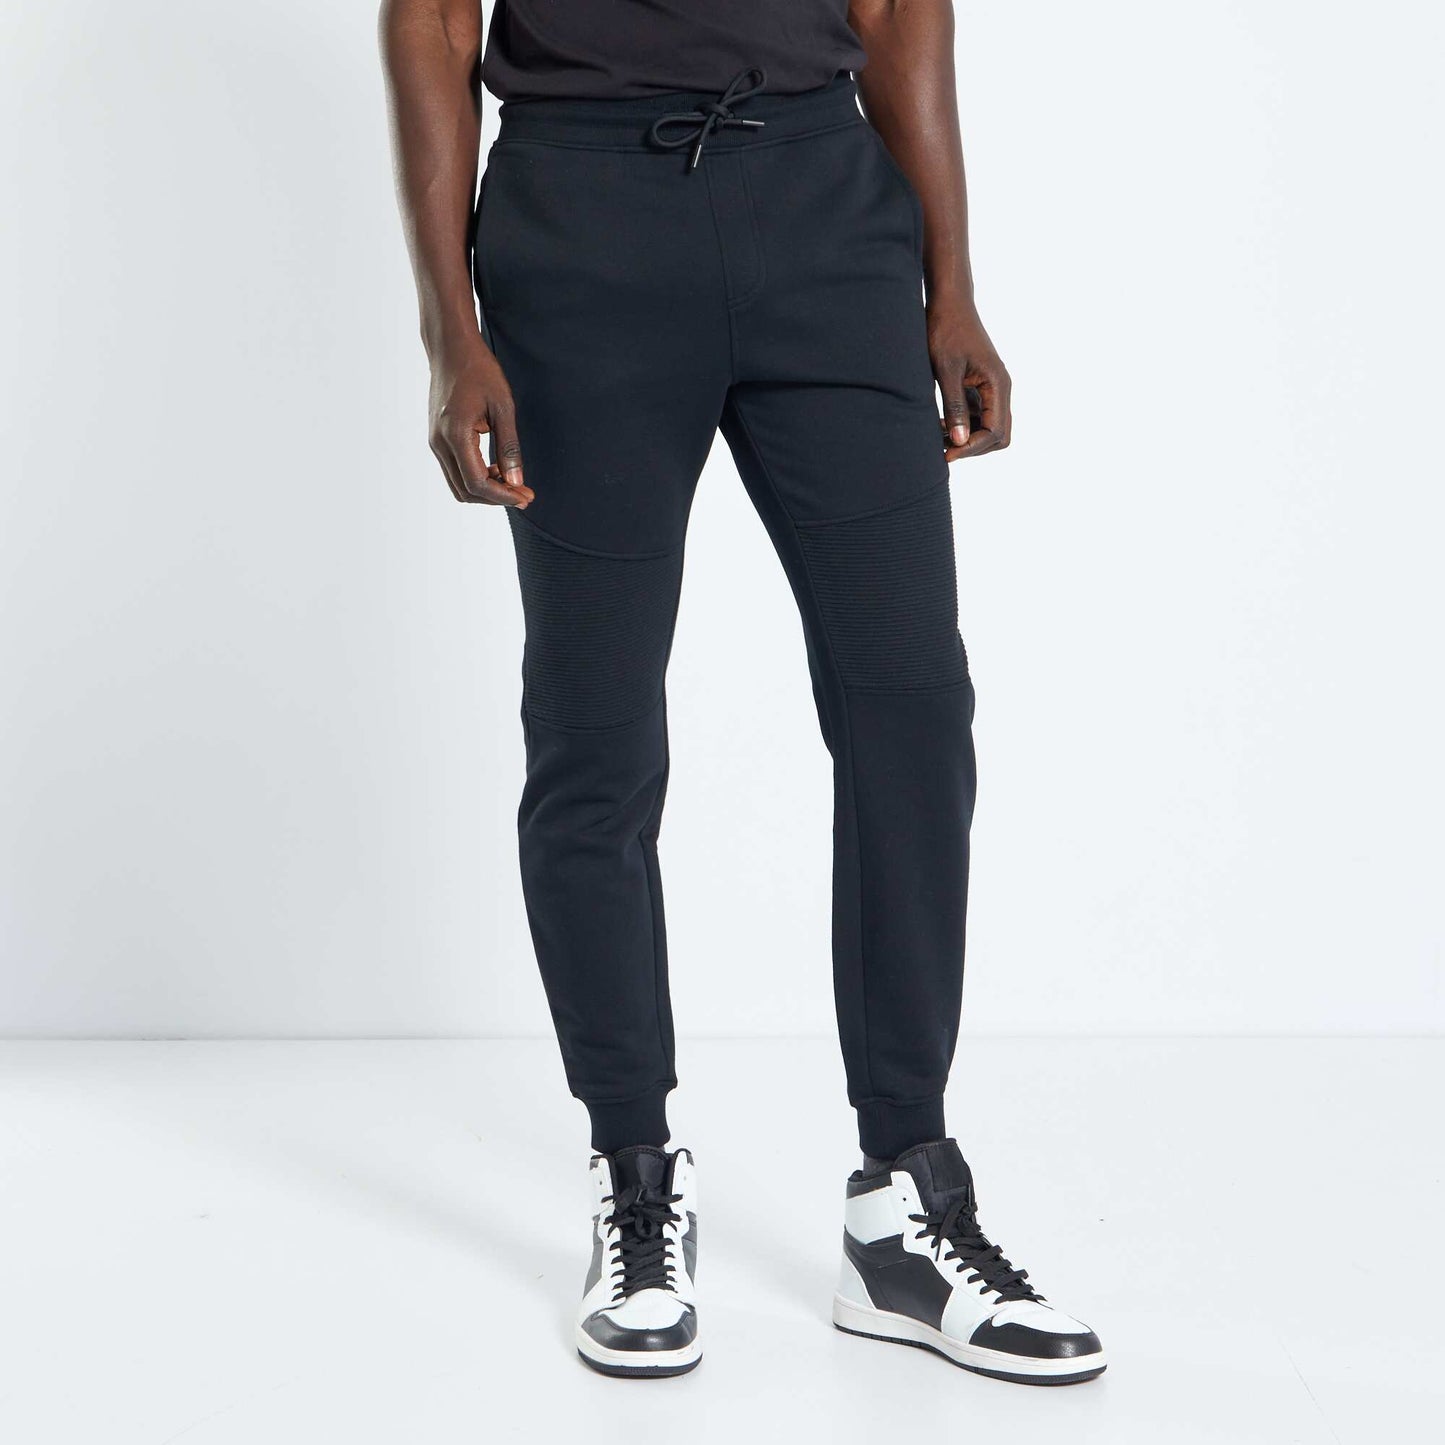 Pantalon de jogging empiècements genoux noir